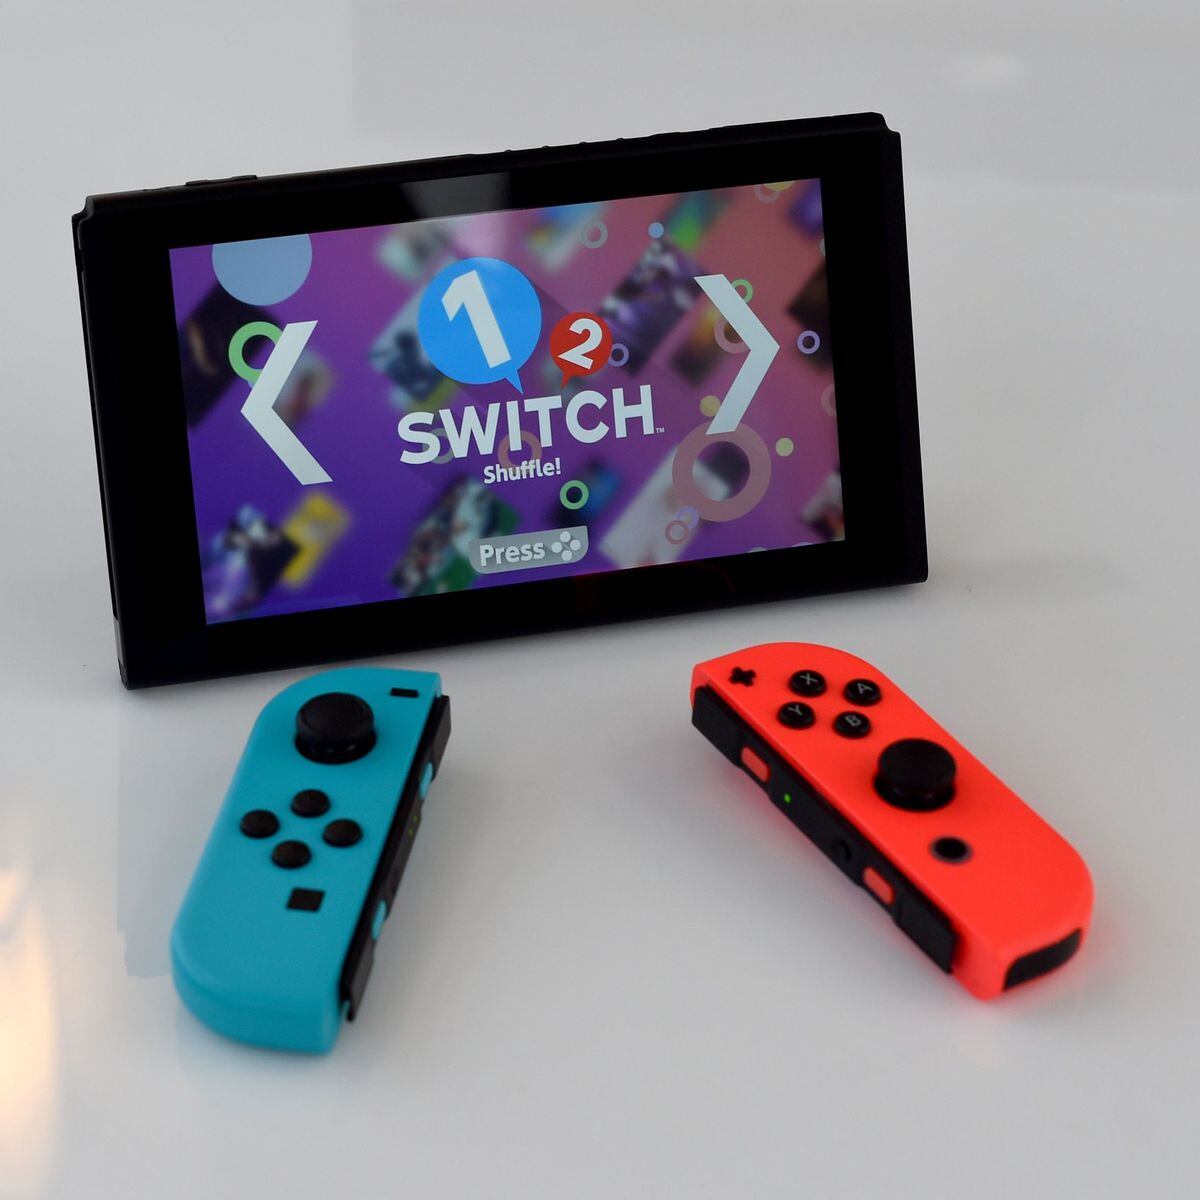 Sunshine Shuffle, Aplicações de download da Nintendo Switch, Jogos